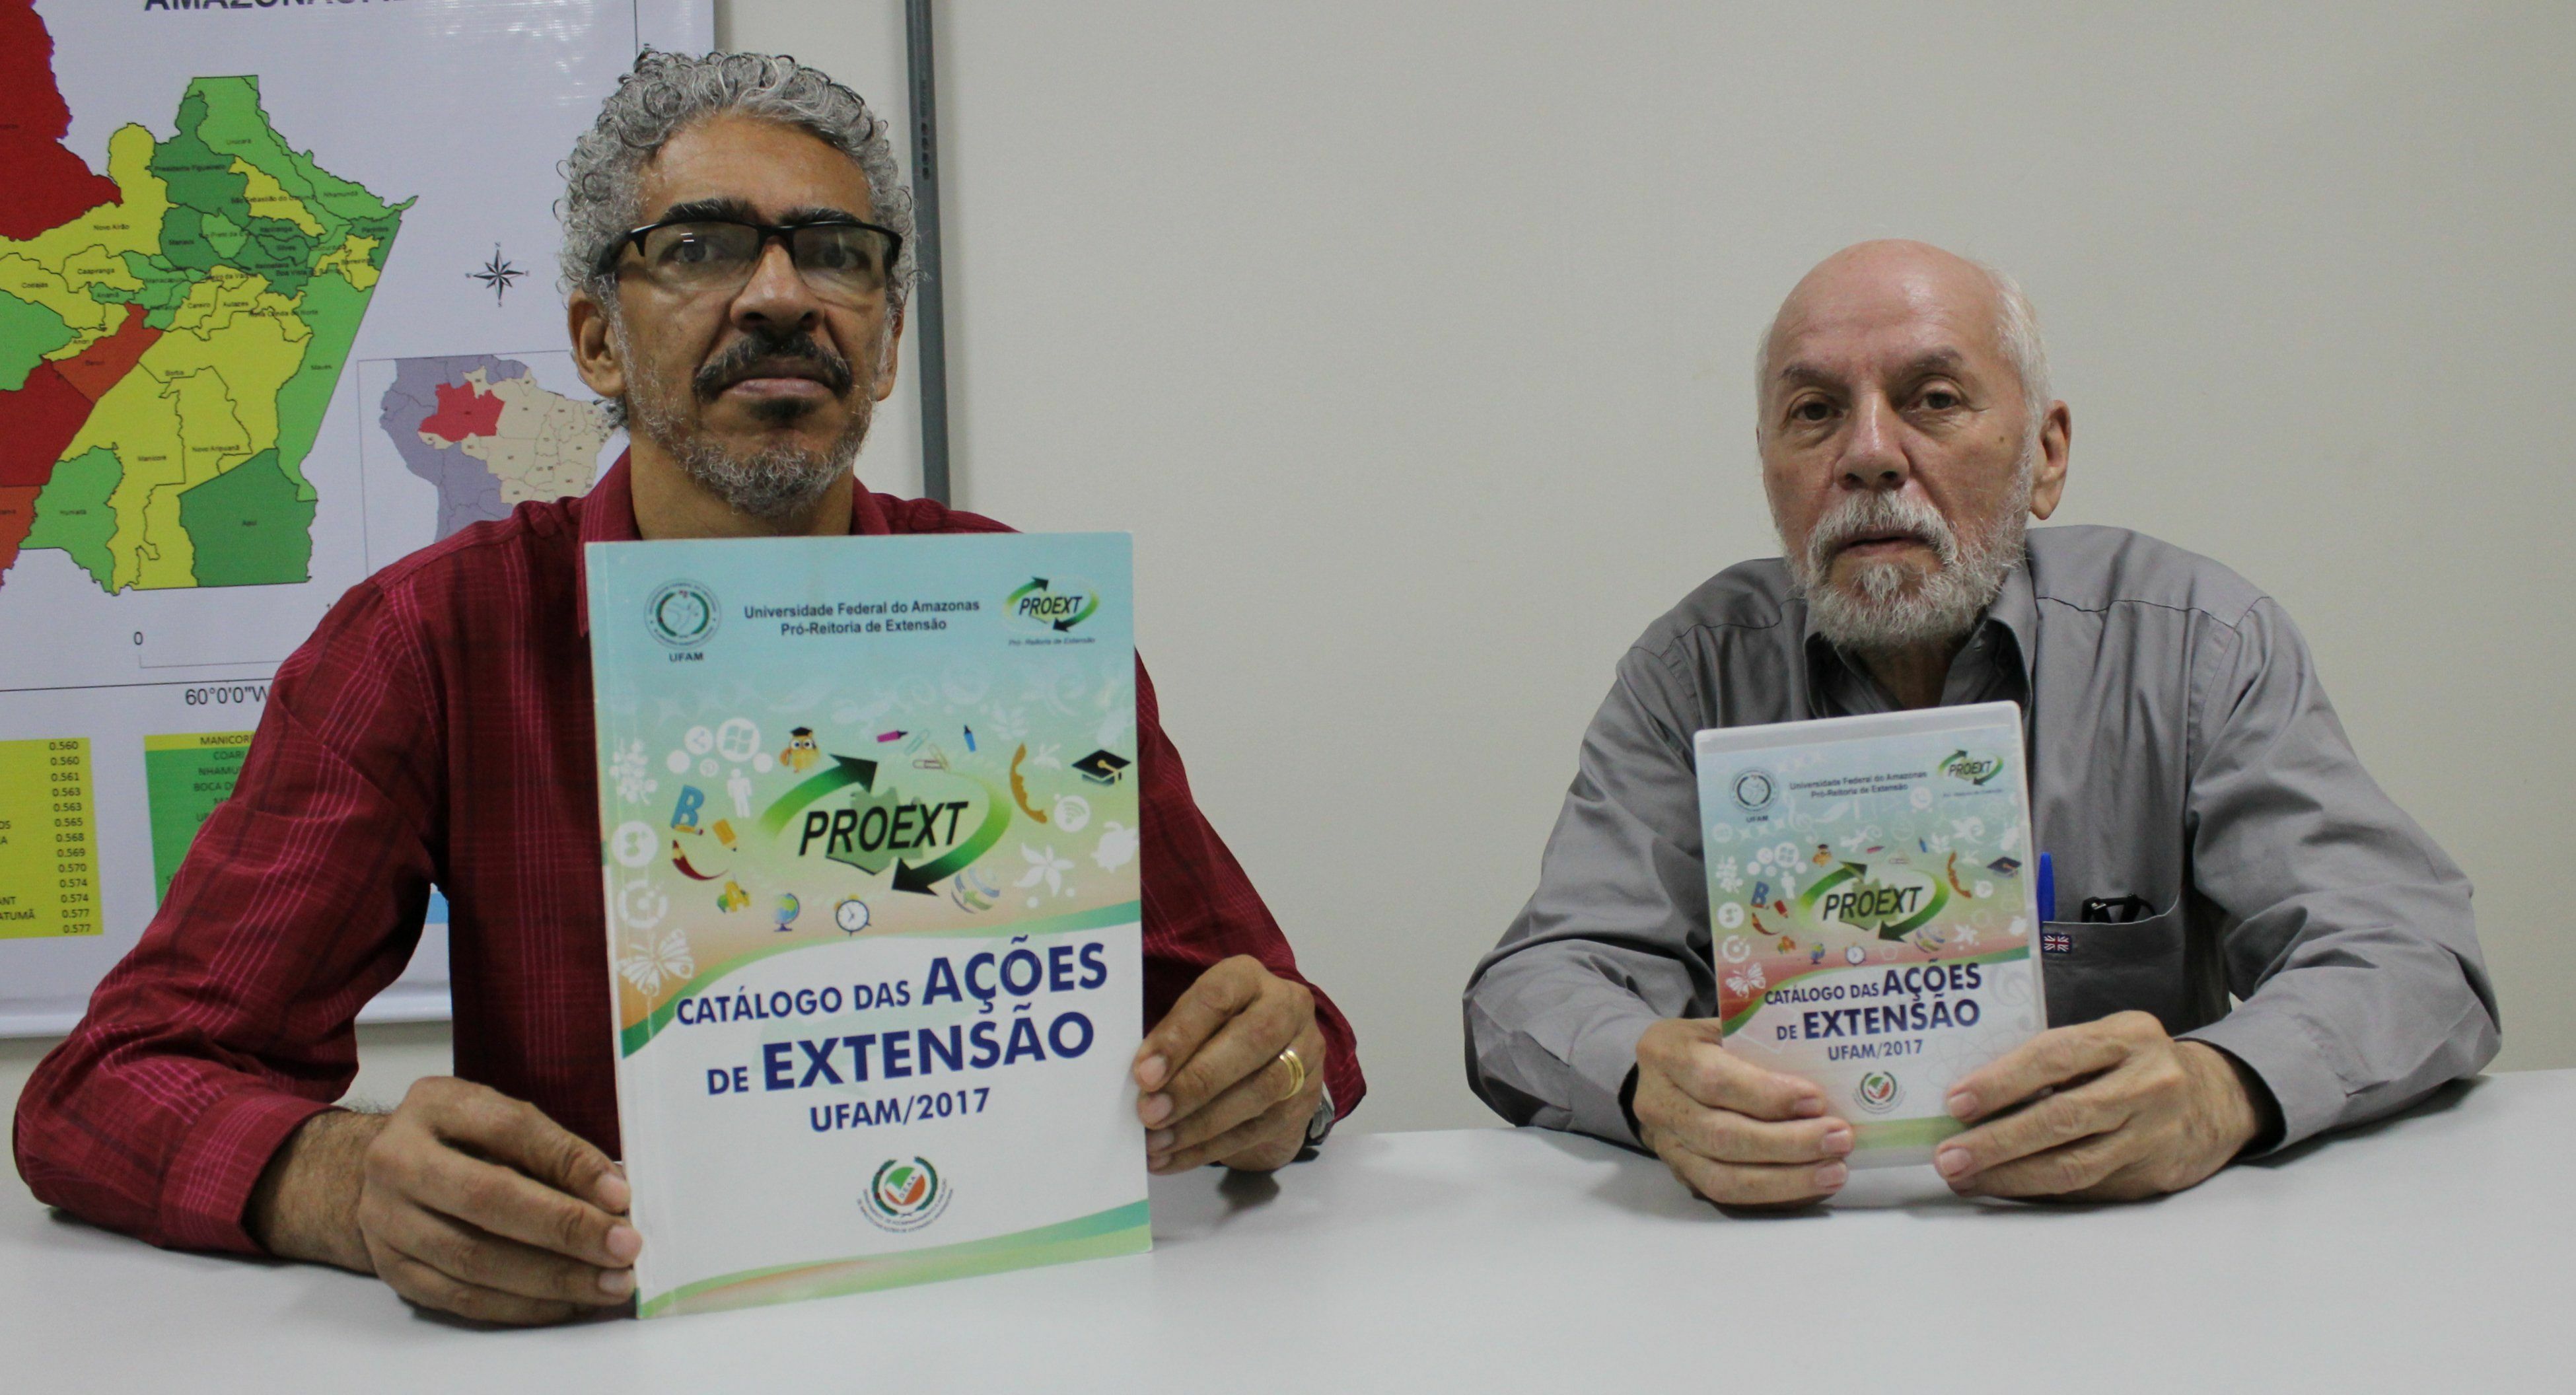 Professores Almir de Menezes (esq.) e Ricardo Bessa com as versões impressa e digital, em CD, do catálogo